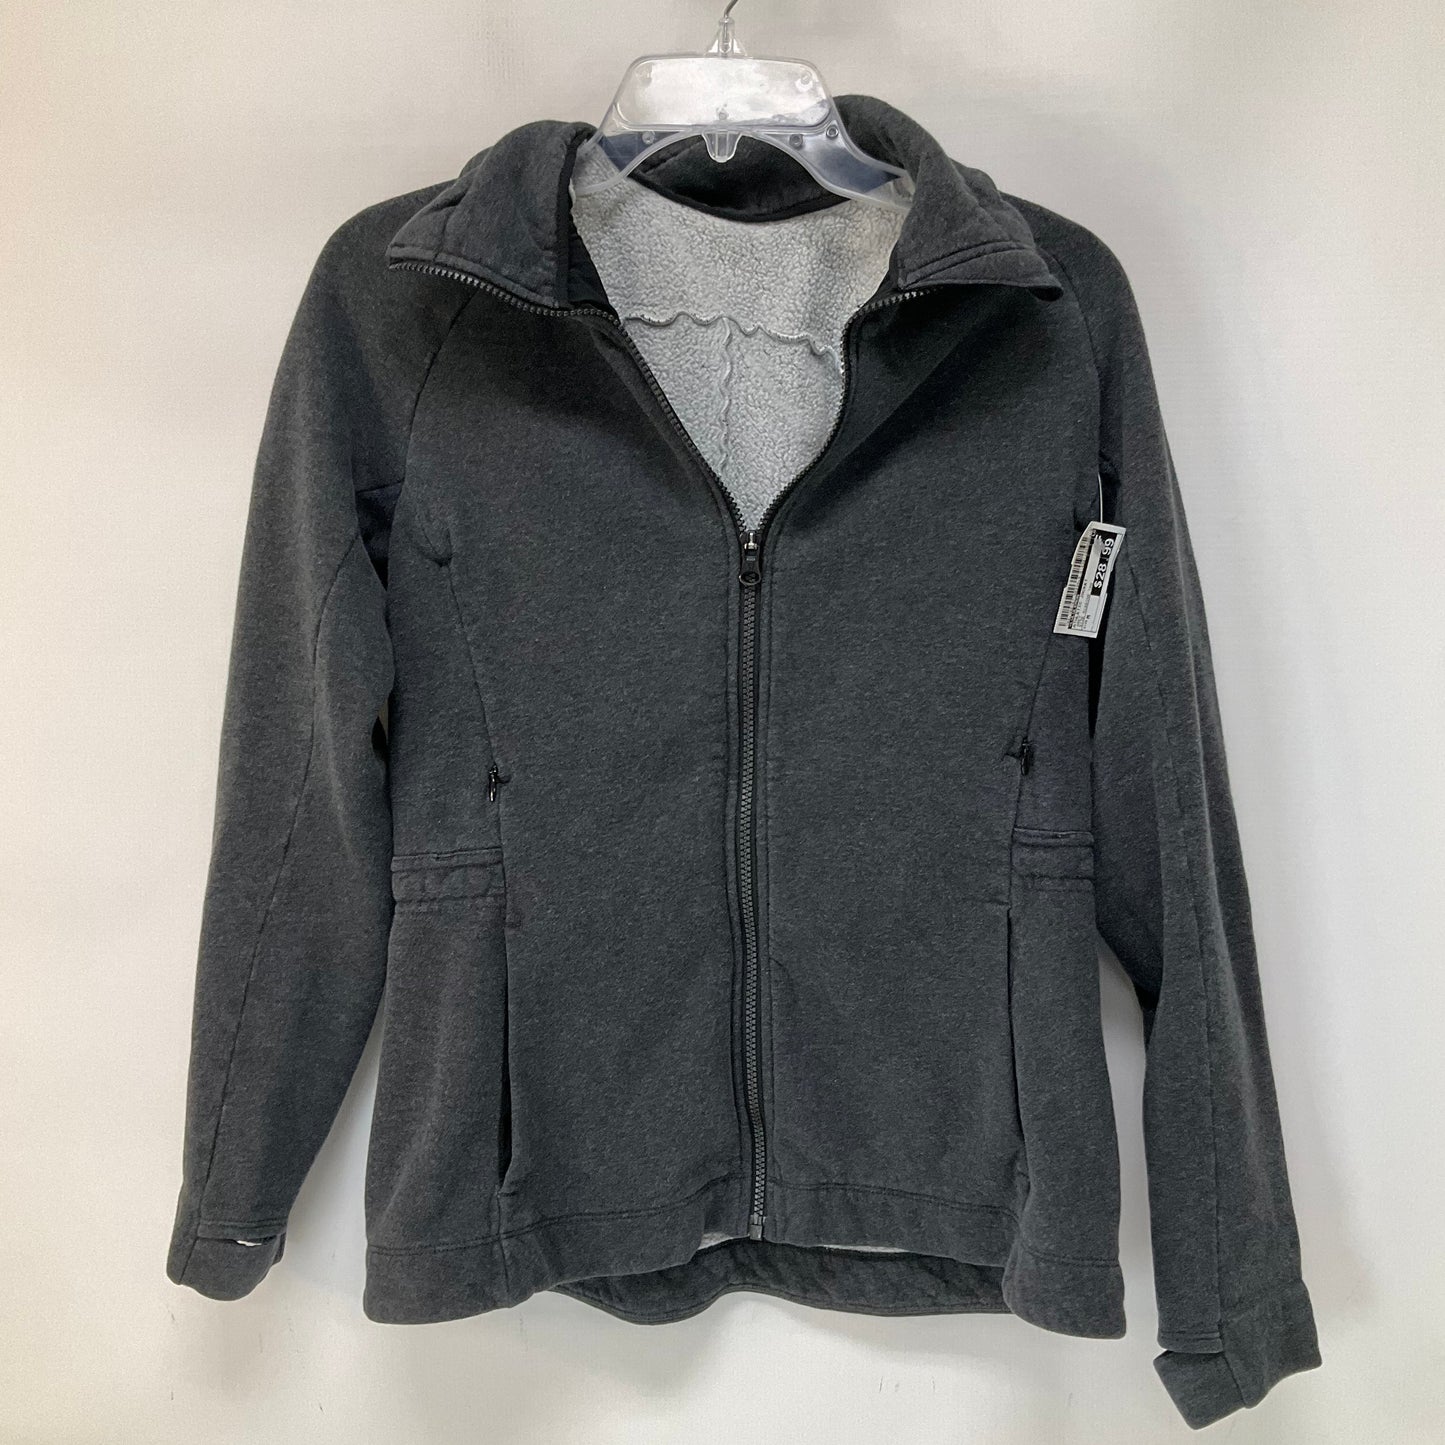 Grey Athletic Jacket Lululemon, Size M